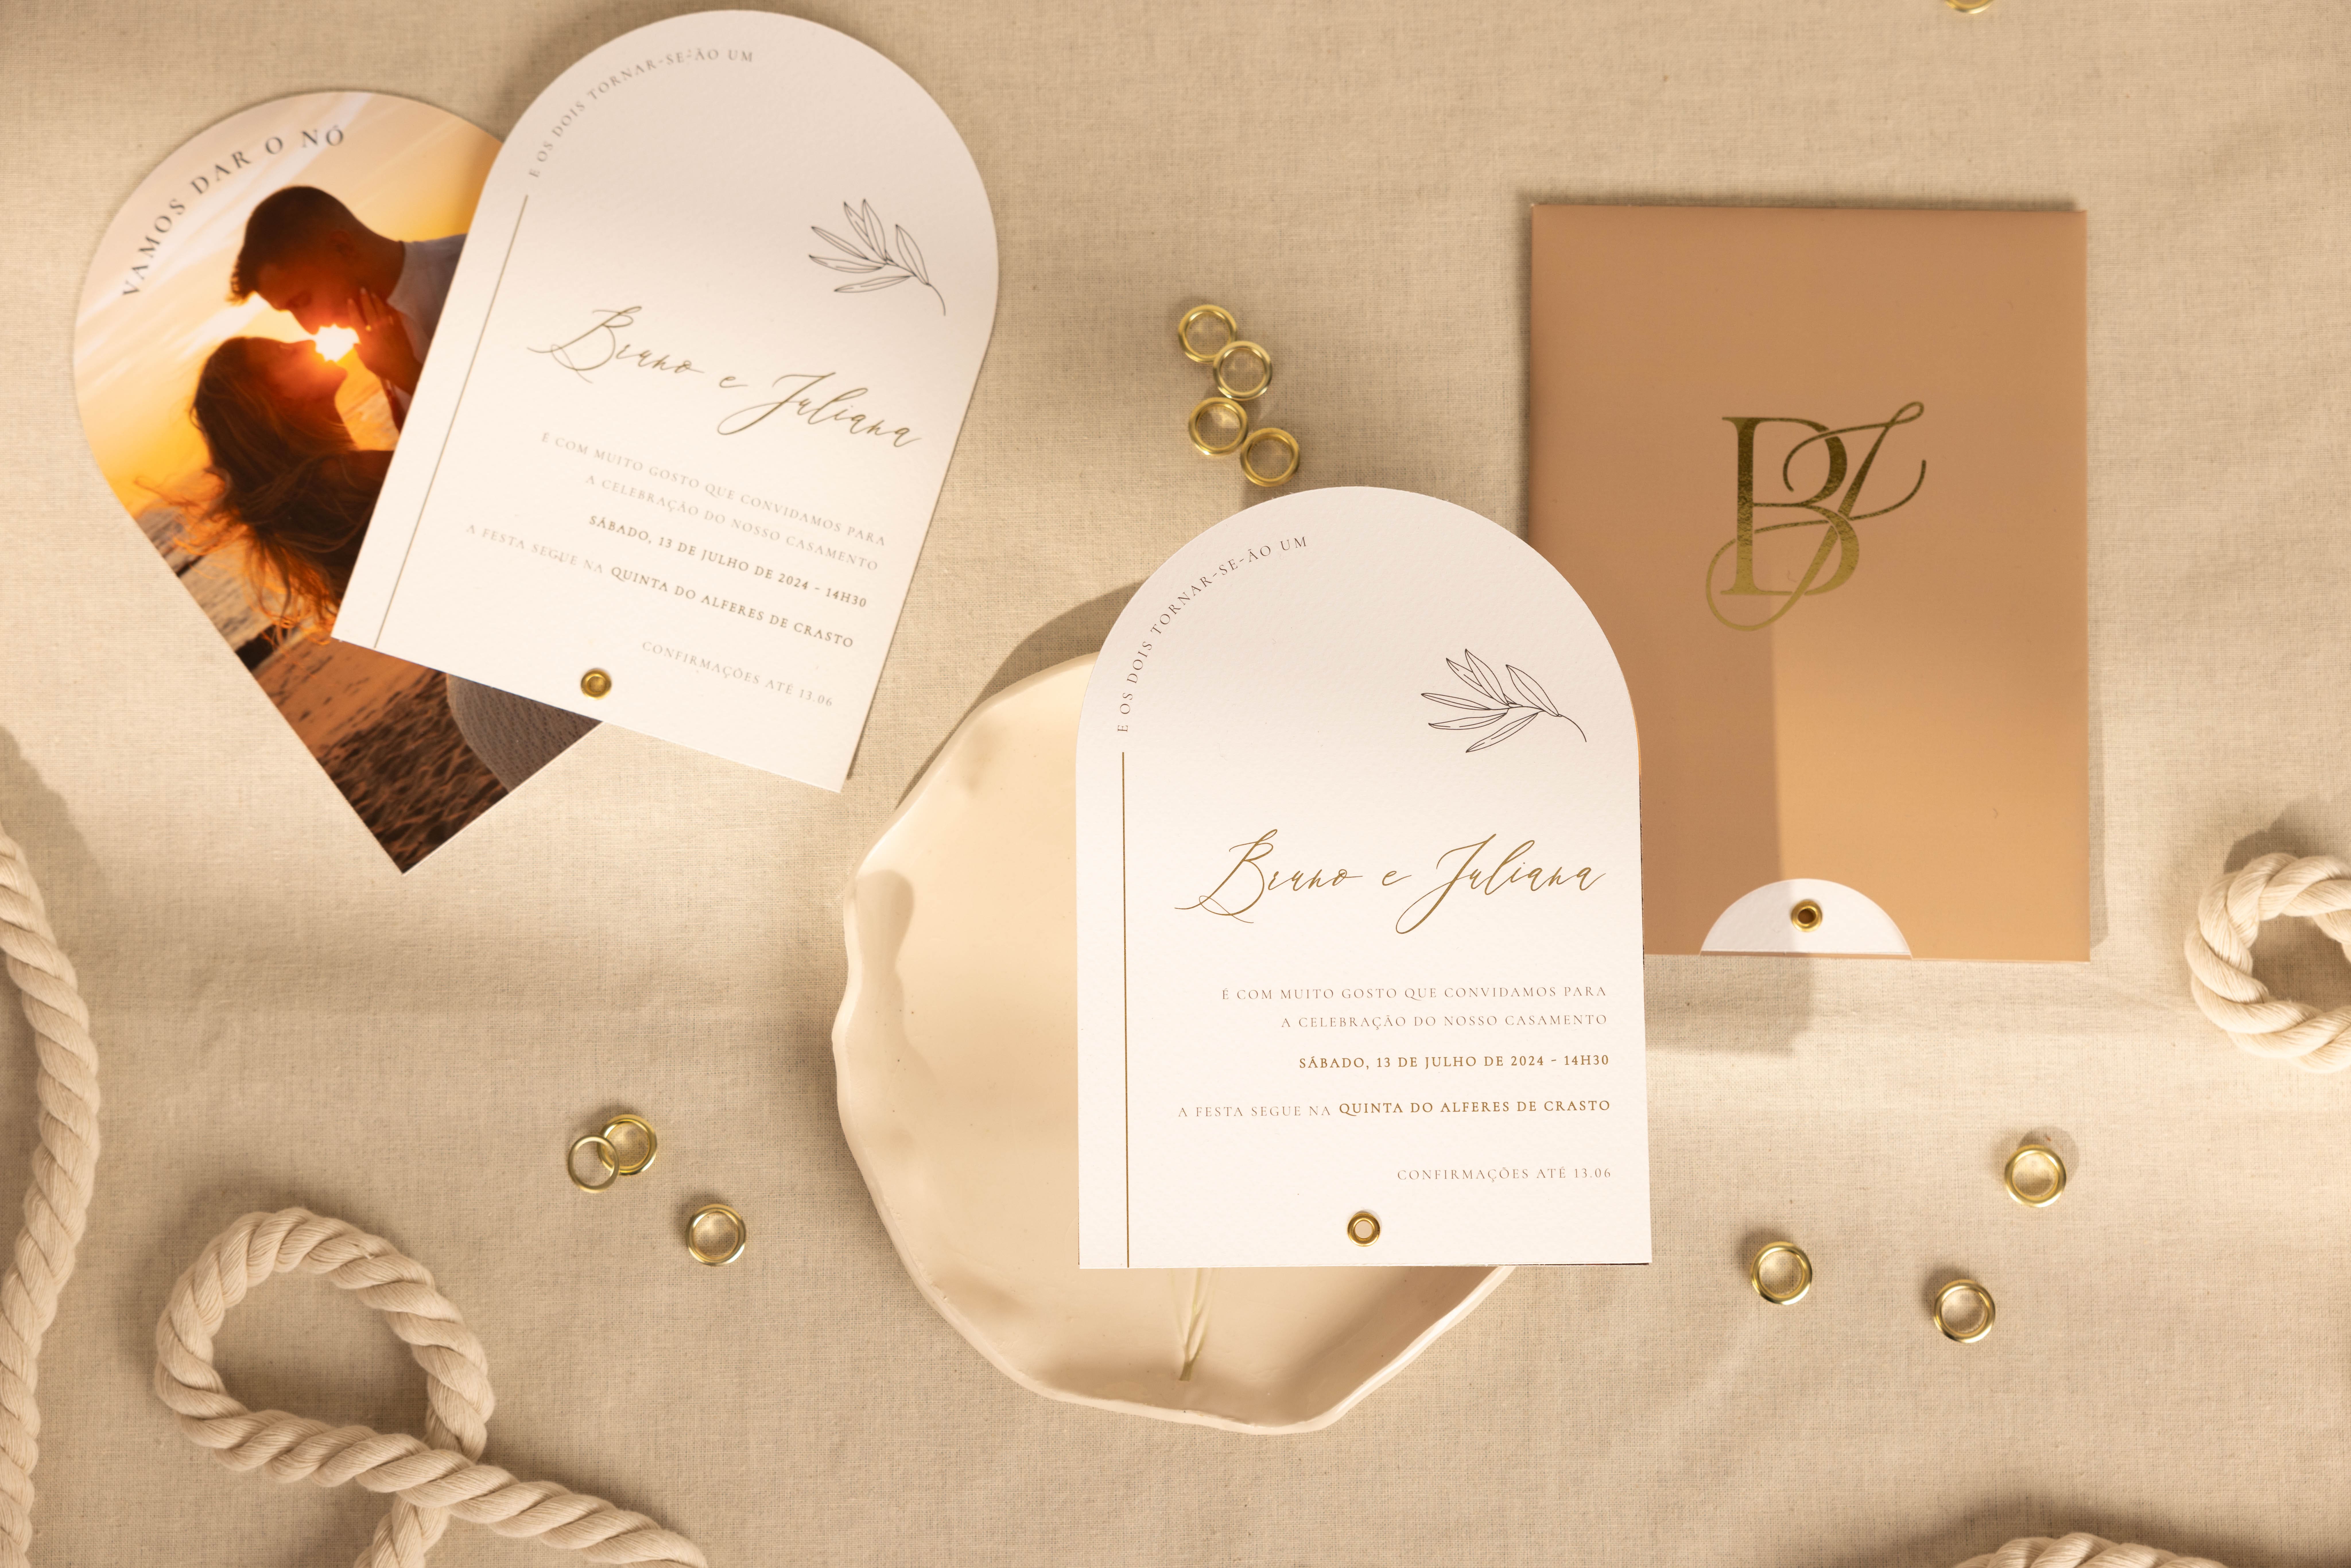 Convite de Casamento fotográfico com detalhes dourados e detalhes florais